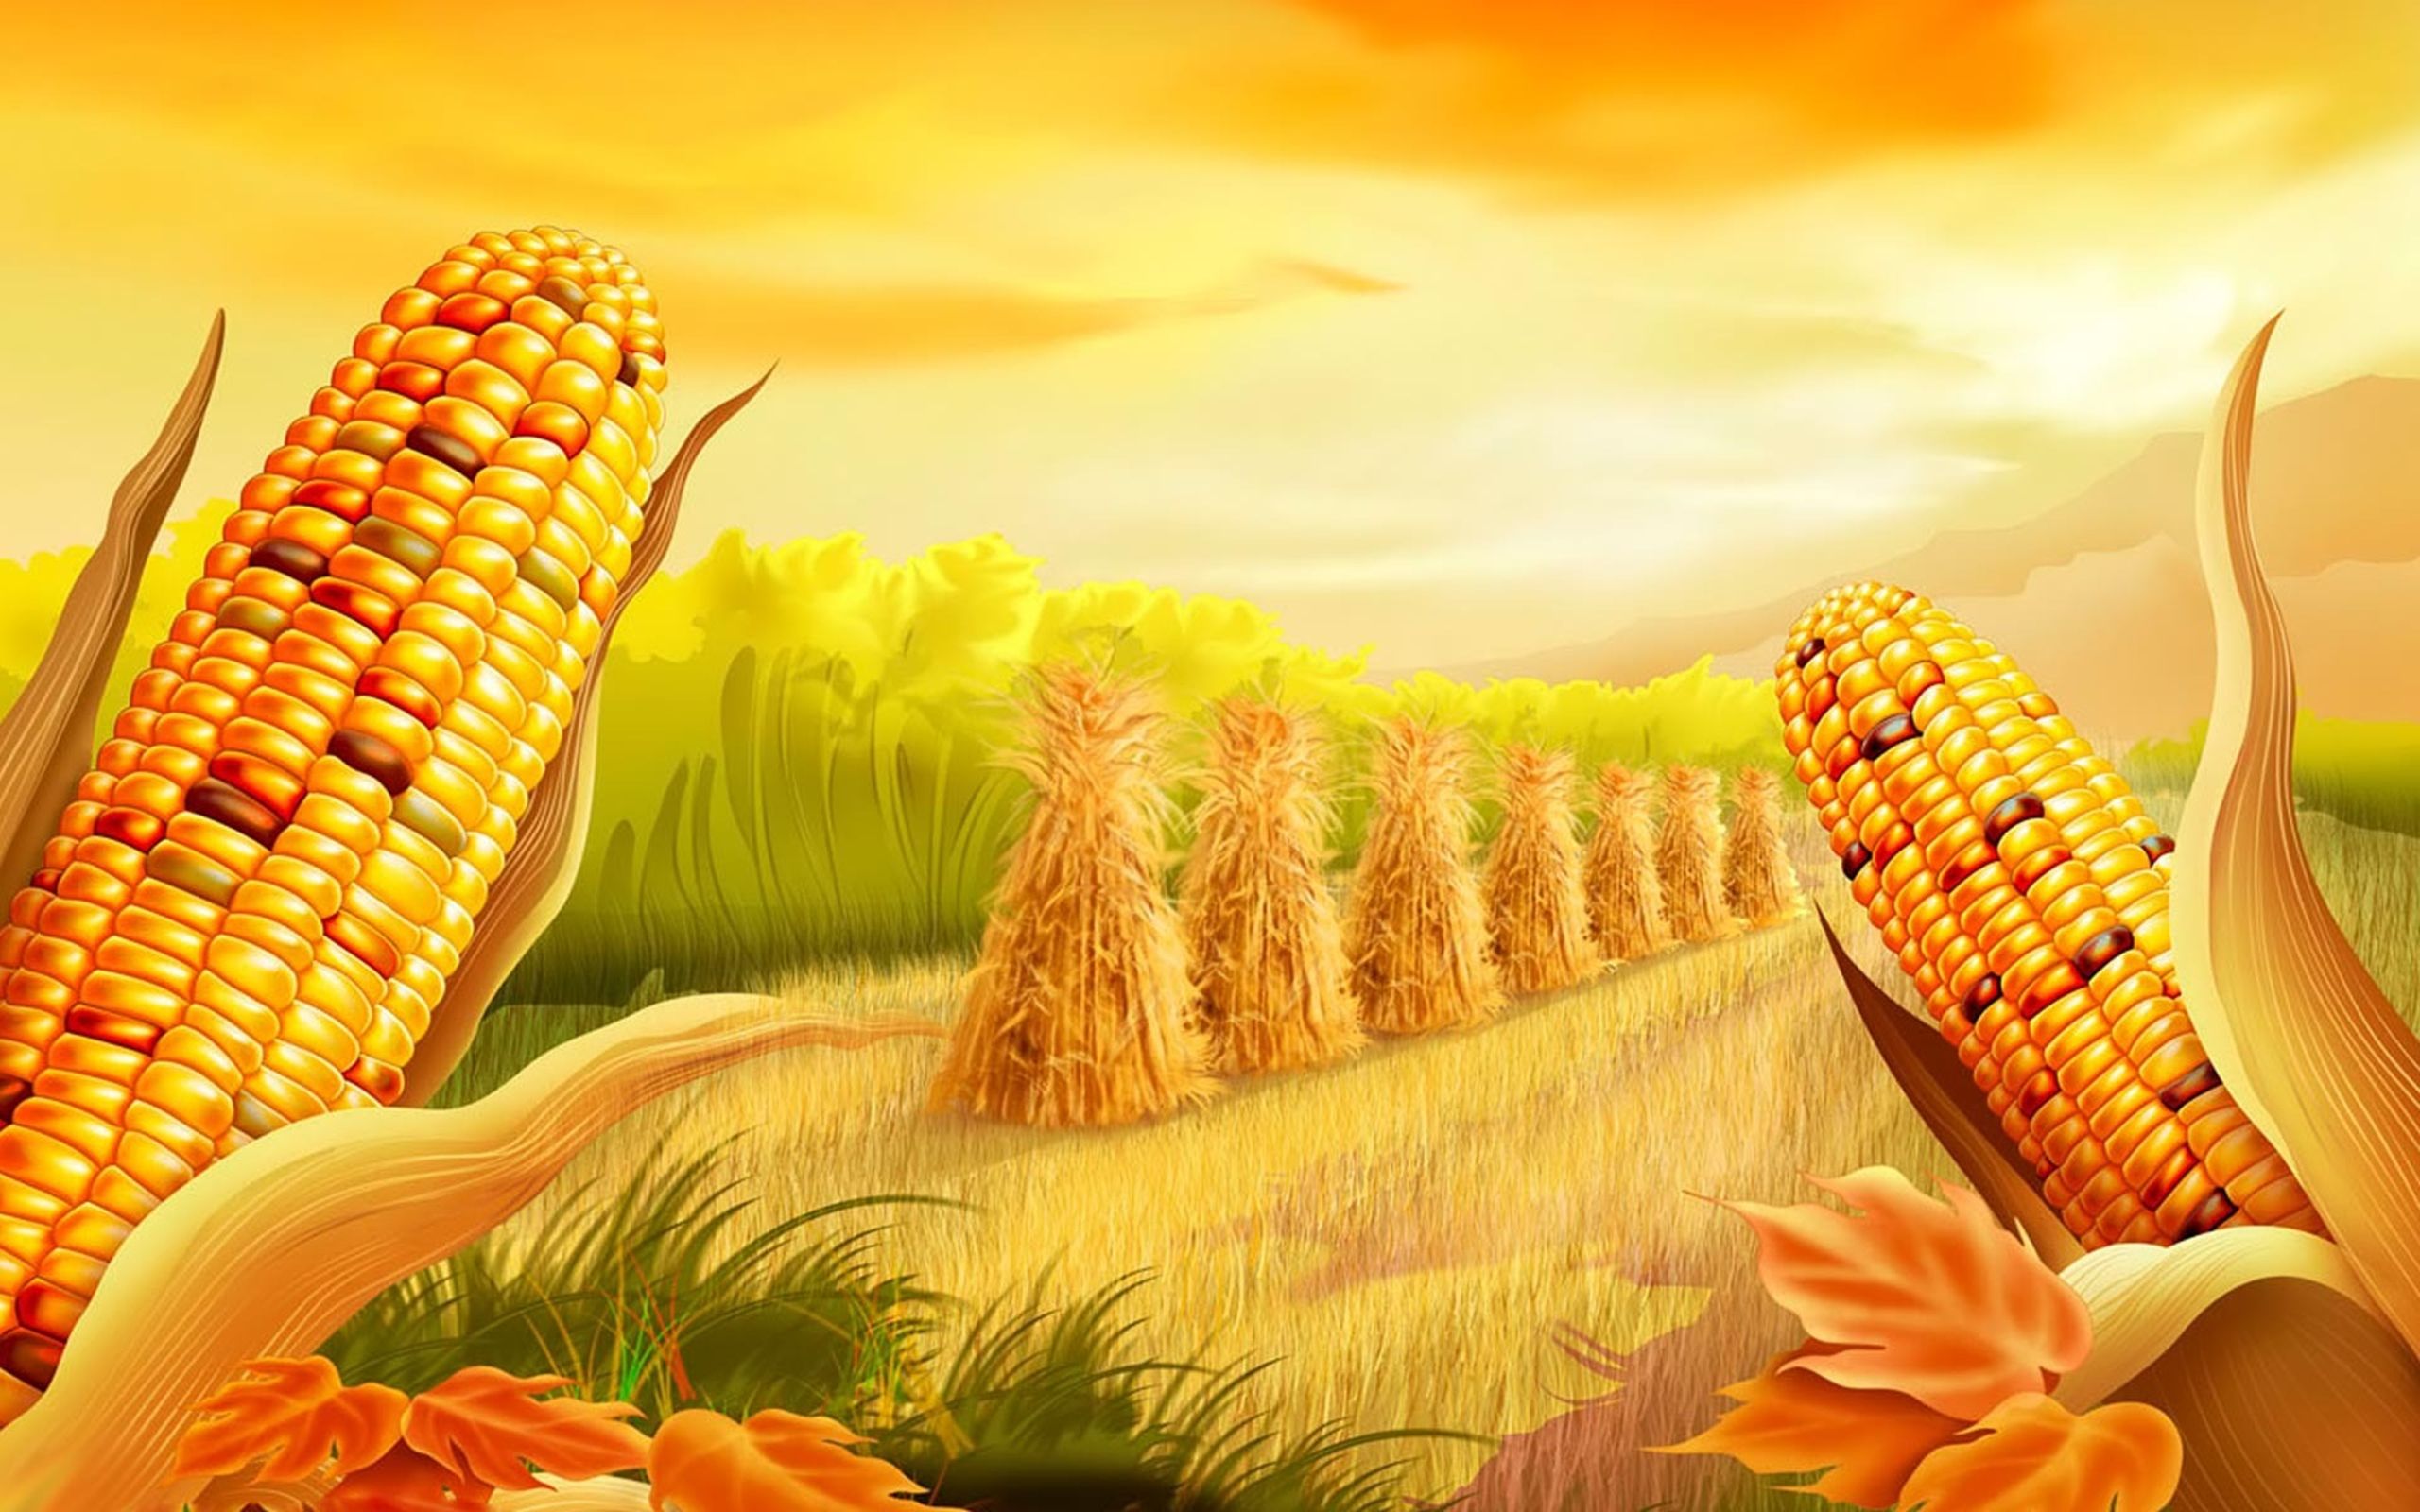 Corn Field Artistic Wallpaper 2560x1600, Wallpaper13.com